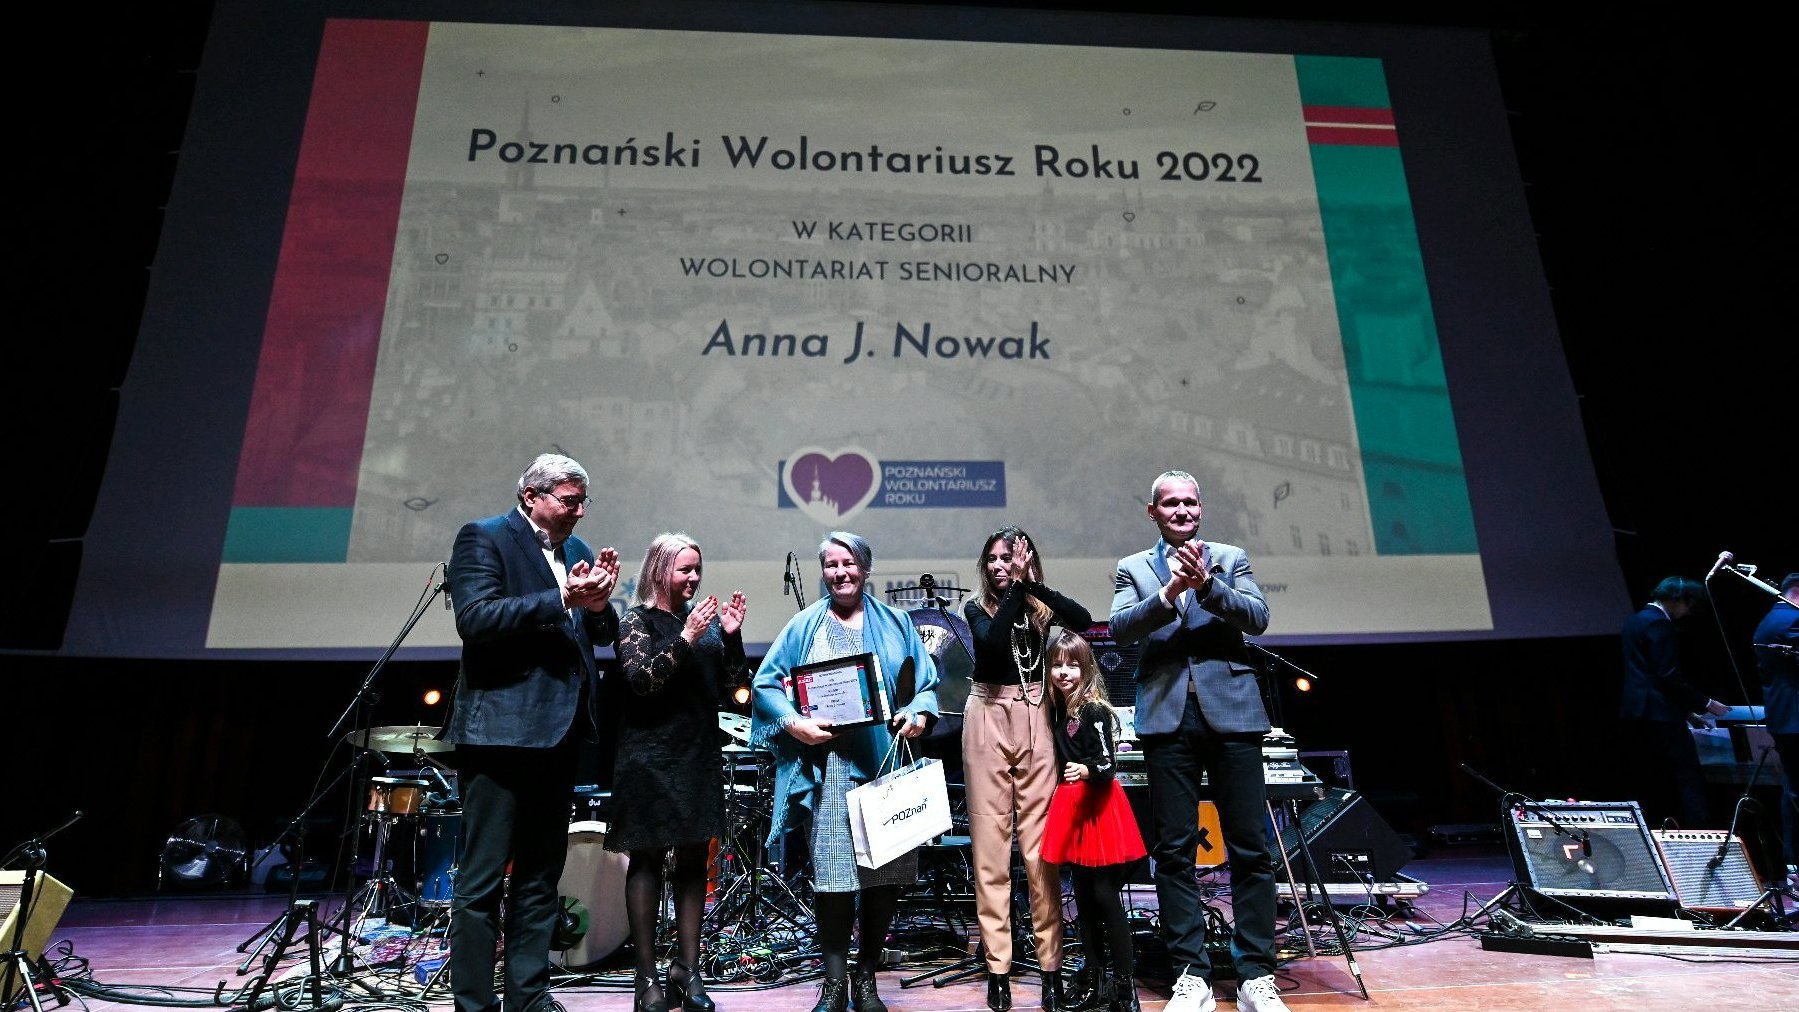 Galeria zdjęć przedstawia osoby stojące na scenie podczas wręczania nagród w ramach konkursu Poznański Wolontariusz Roku 2022.